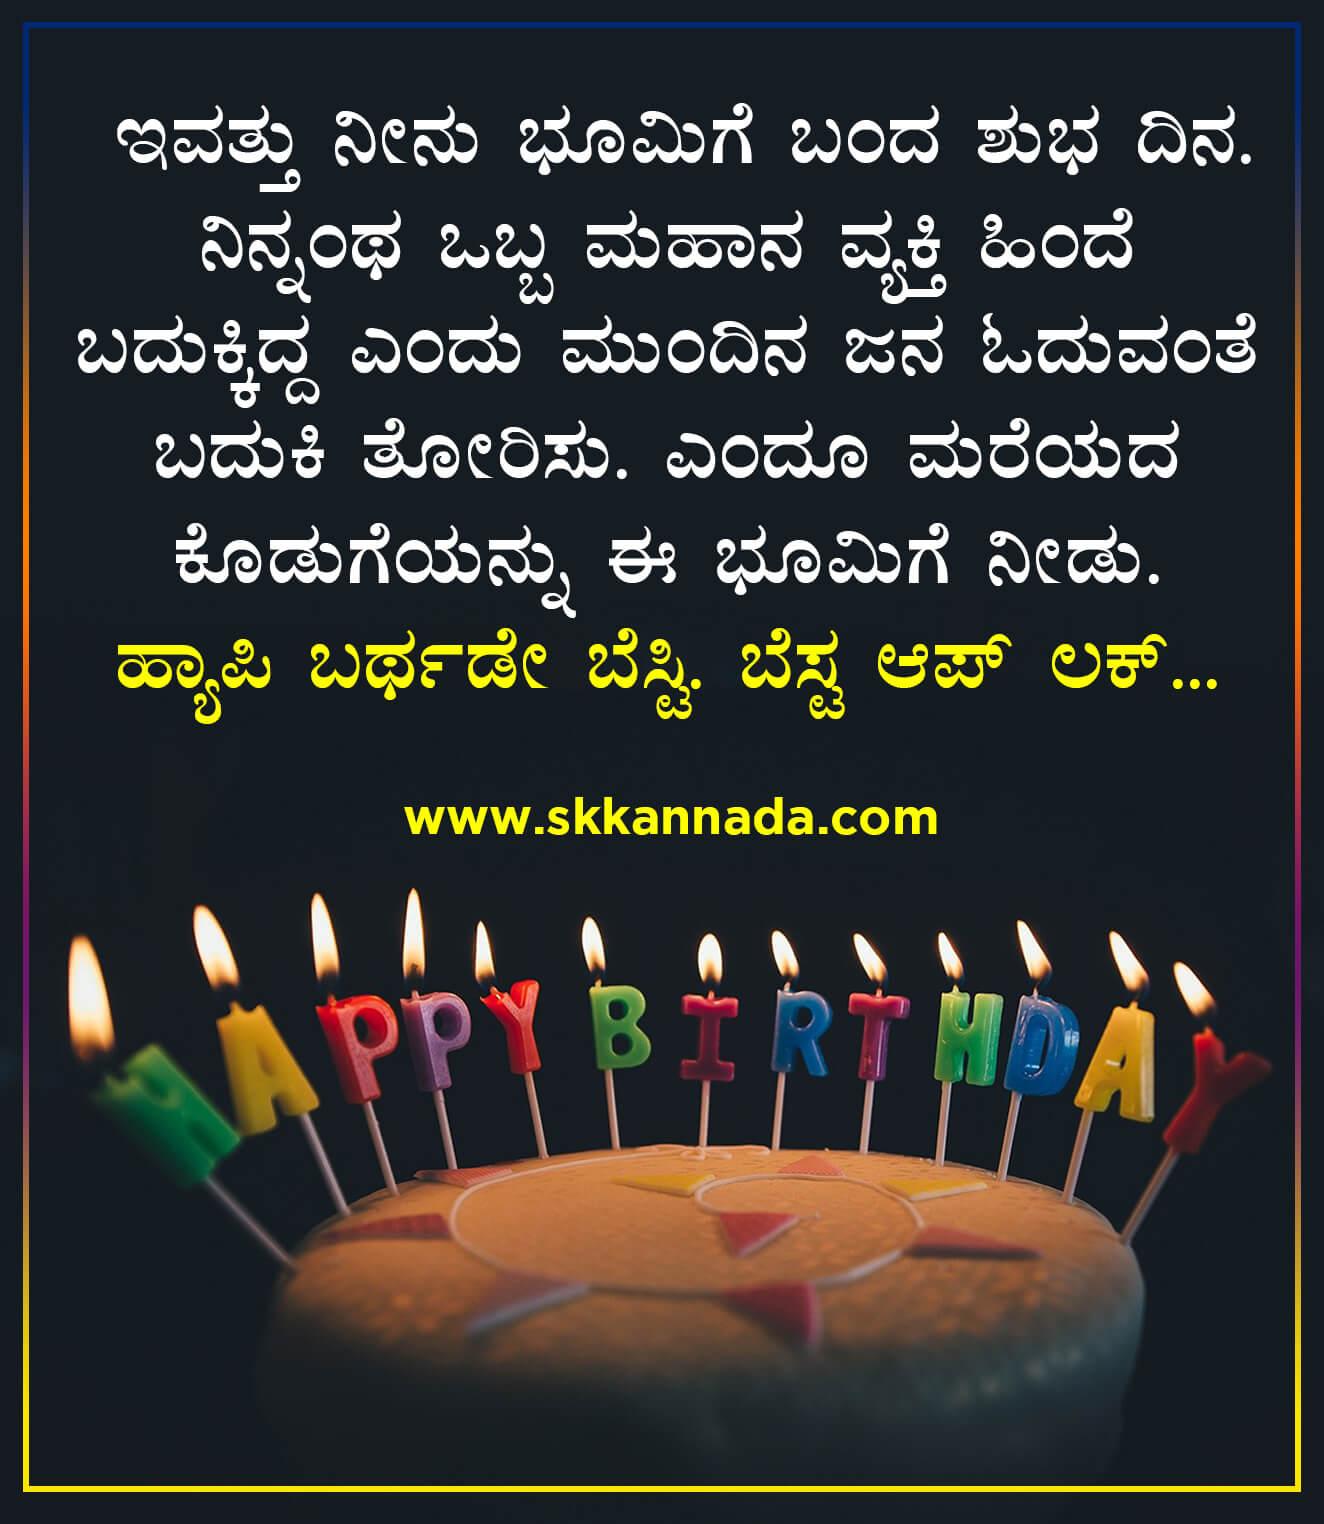 ಹ್ಯಾಪಿ ಬರ್ಥಡೇ Wishಗಳು - Happy Birthday Wishes in Kannada - Birthday Wishes  in Kannada - Roaring Creations Films